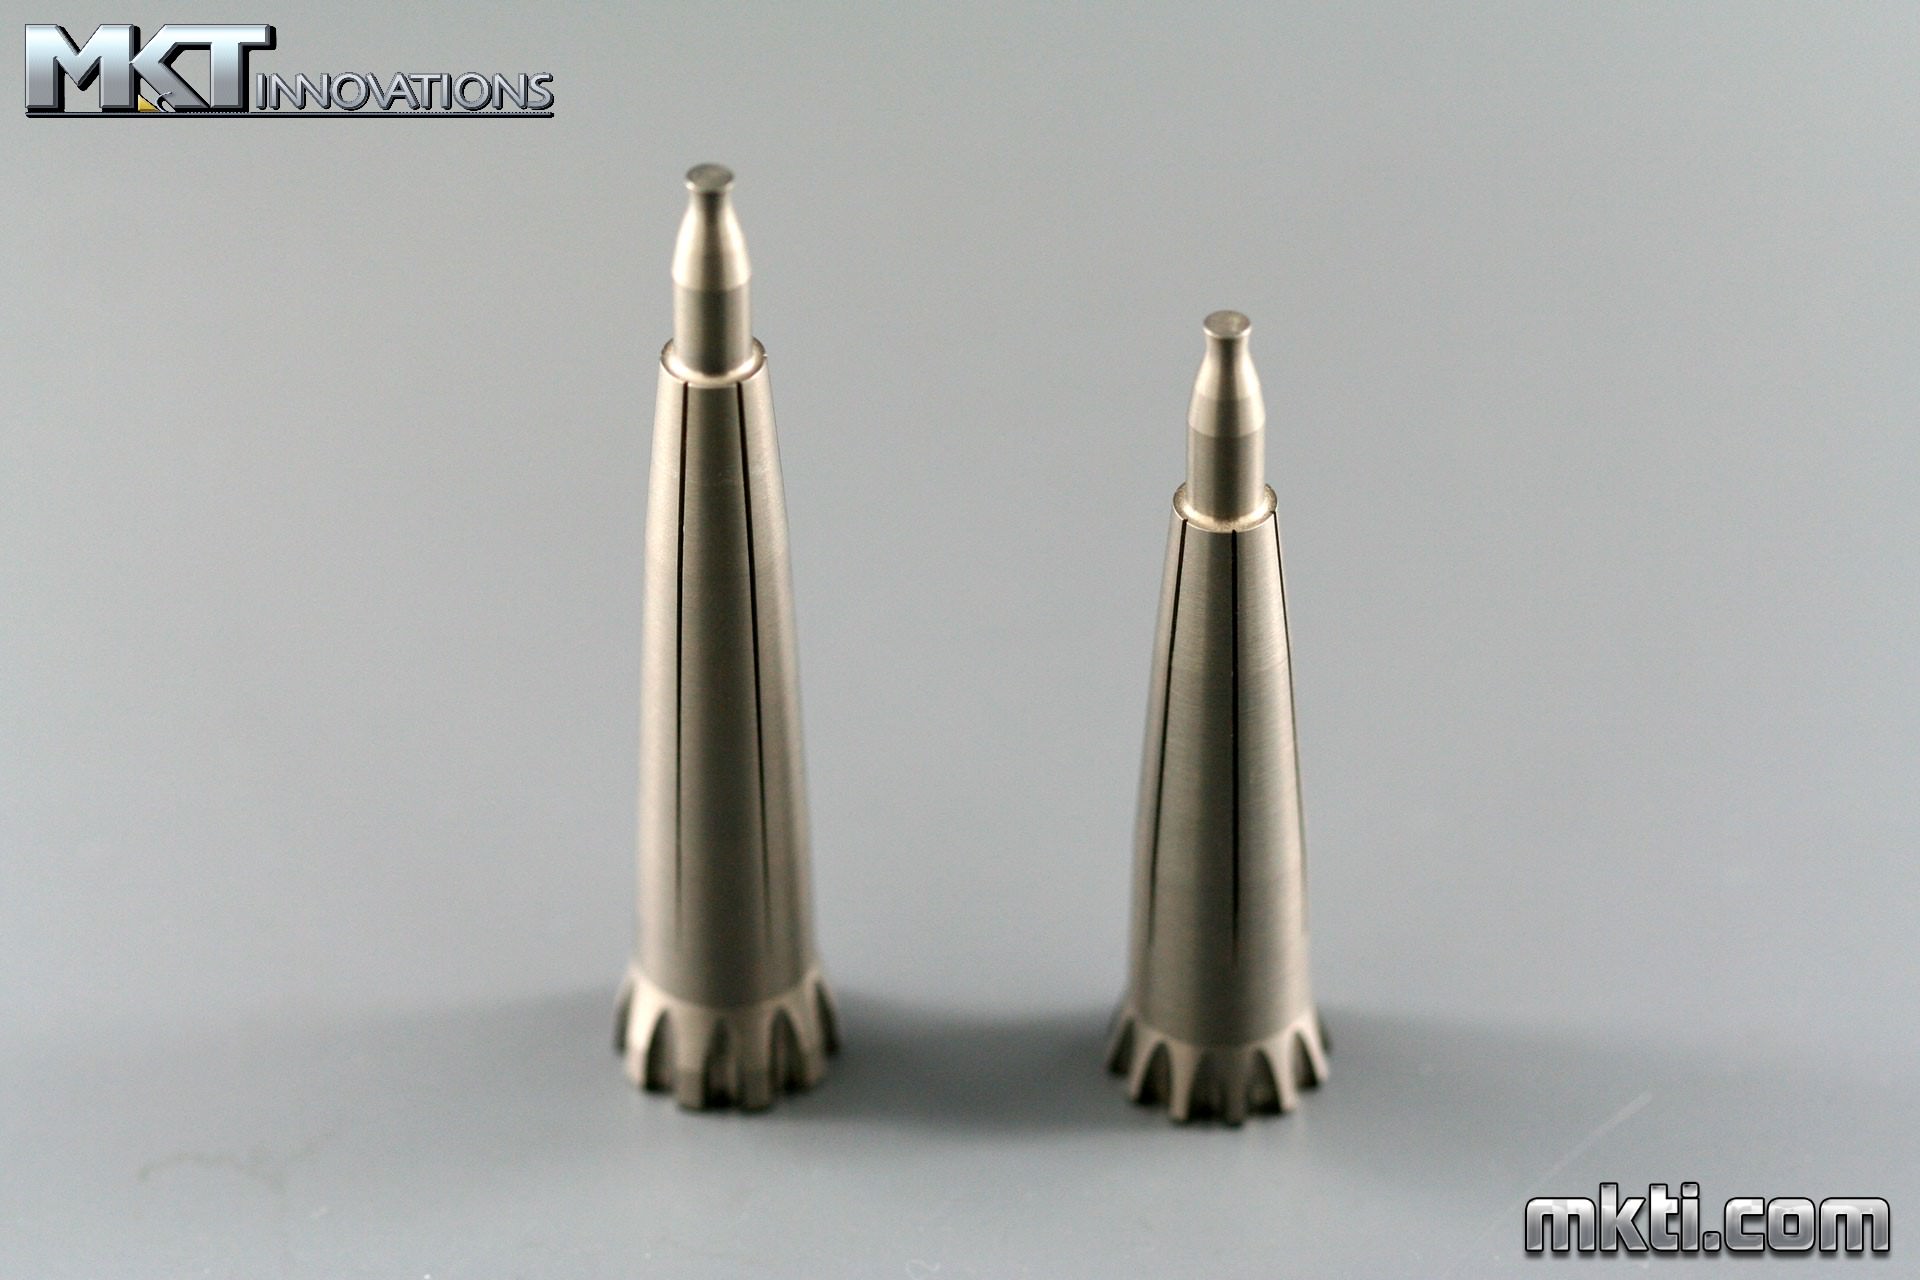 Tungsten - Armor Piercing Projectiles